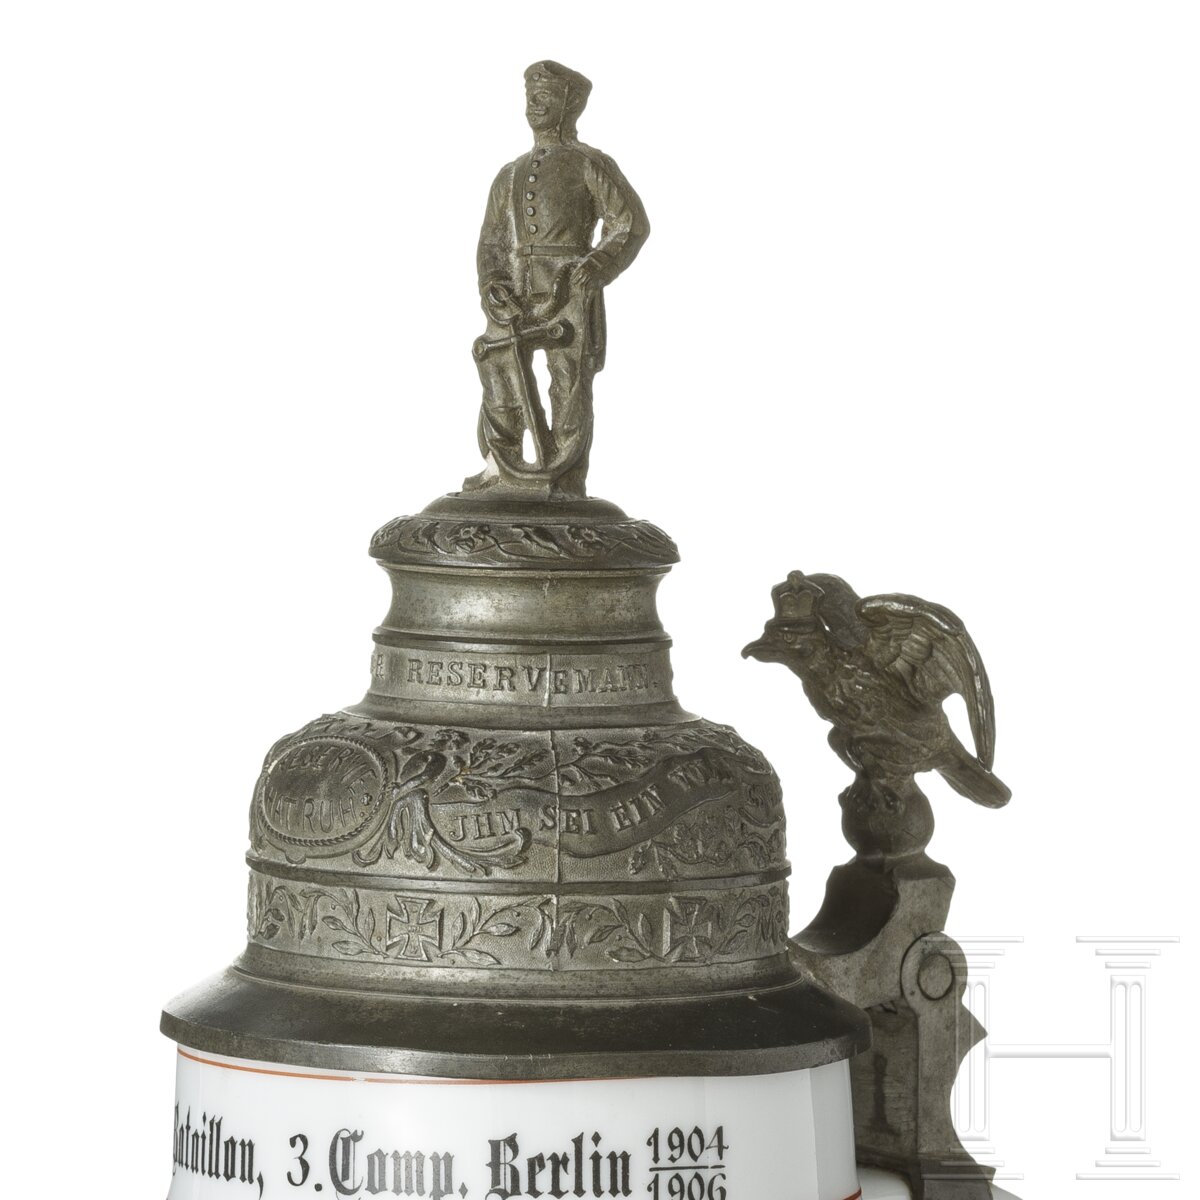 Reservistenkrug des Pioniers Delfs von der 3. Kompanie des Garde-Pionier-Bataillons, Berlin, 1904 - - Image 5 of 5